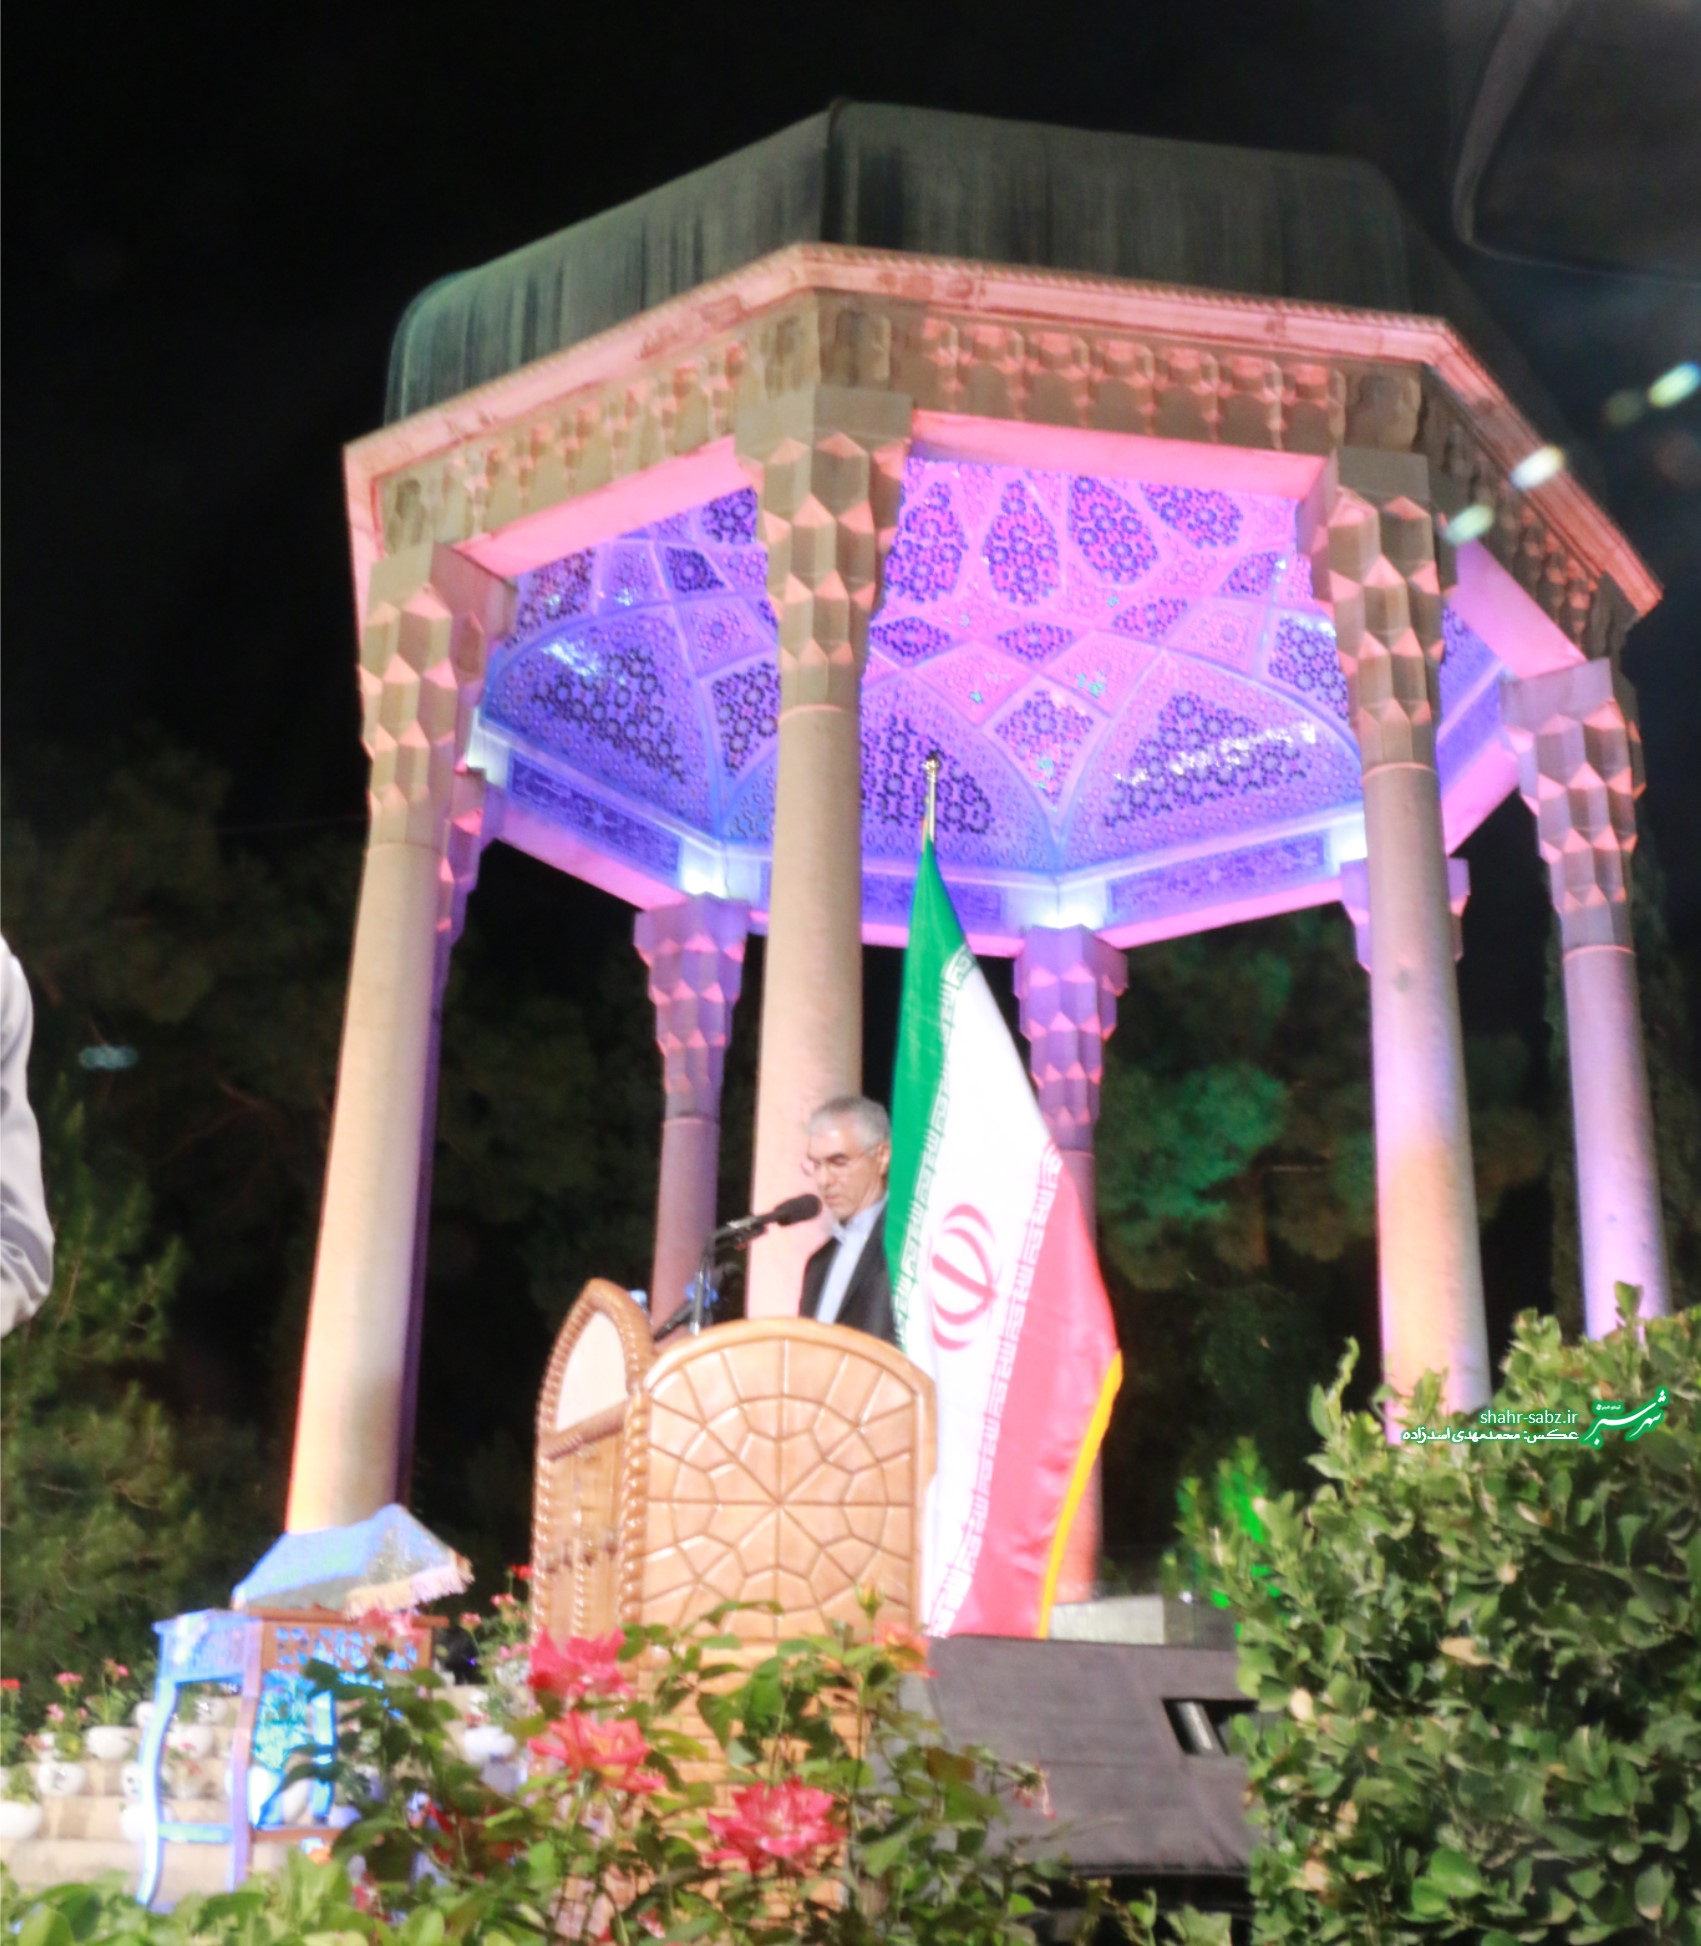 19-07-1397 آیین بزرگداشت یادروز حافظ در حافظیه شیراز - عکس از محمدمهدی اسدزاده